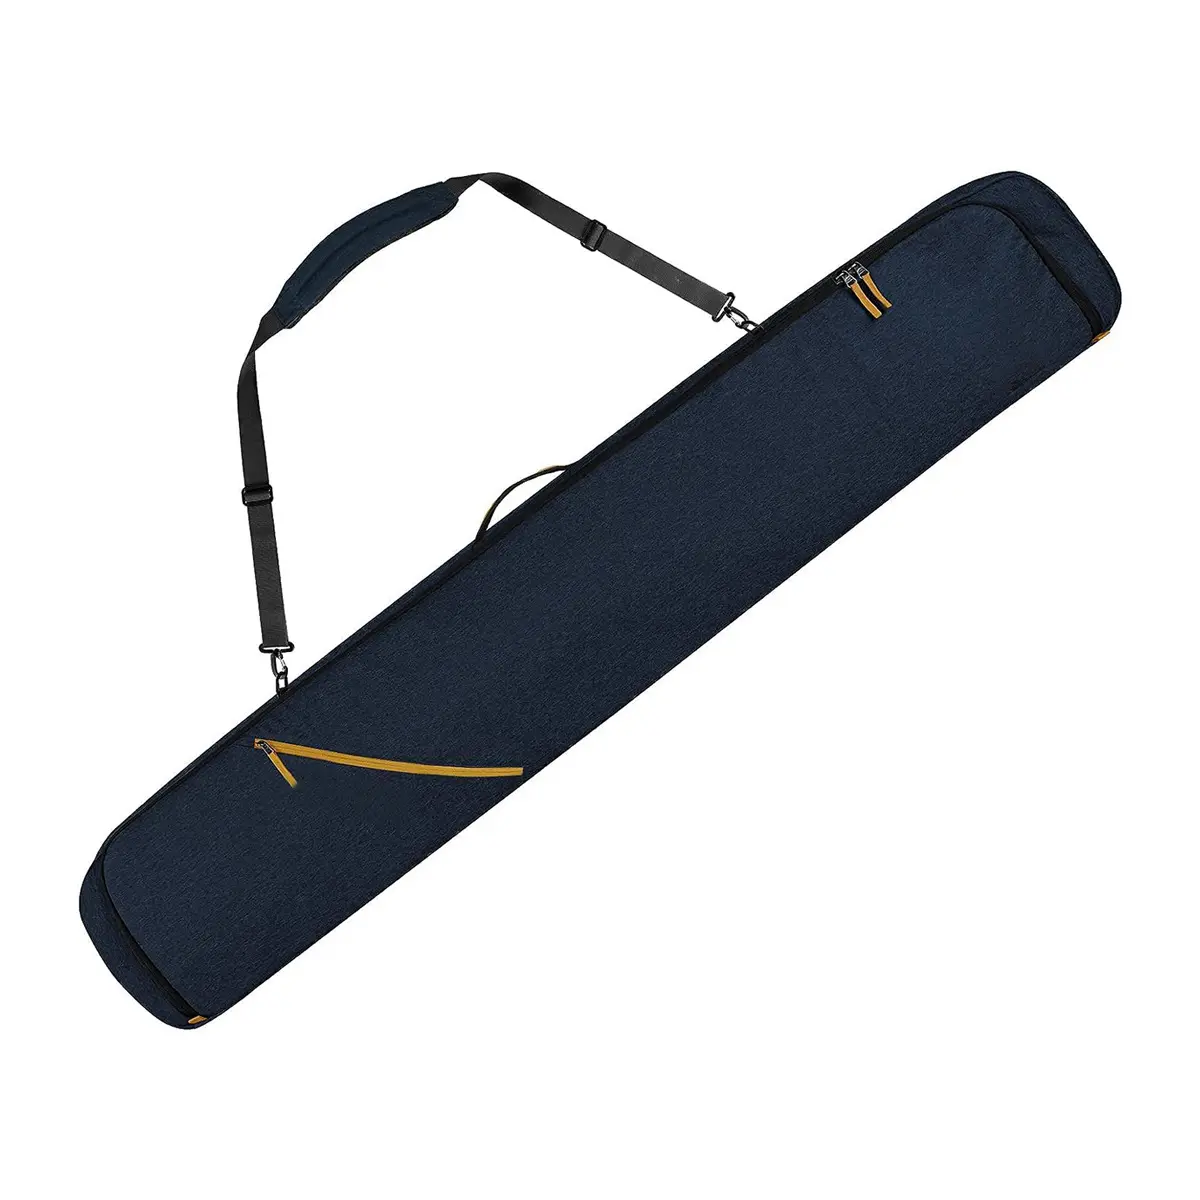 Bolsa de tabla de esquí acolchada Bolsa de esquí individual Acolchada de viaje para transportar bolsillos de equipo de esquí con asa ajustable